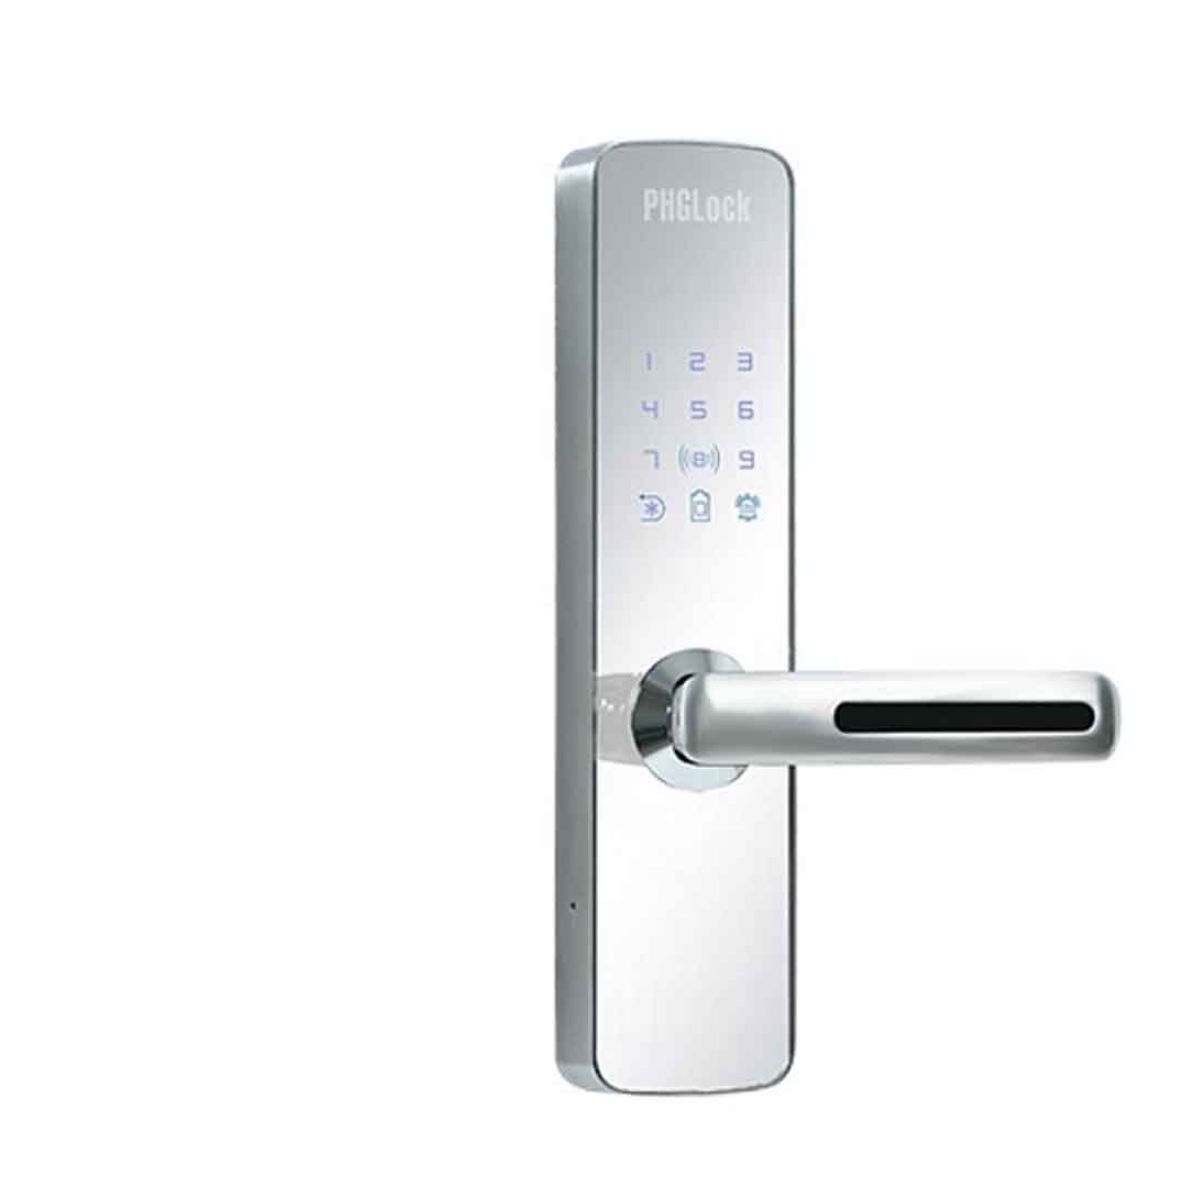 Khóa cửa tay gạt cho căn hộ, nhà phố PHGLock KR7153 Mica gương bạc, thẻ MI, mật mã và chìa khóa cơ